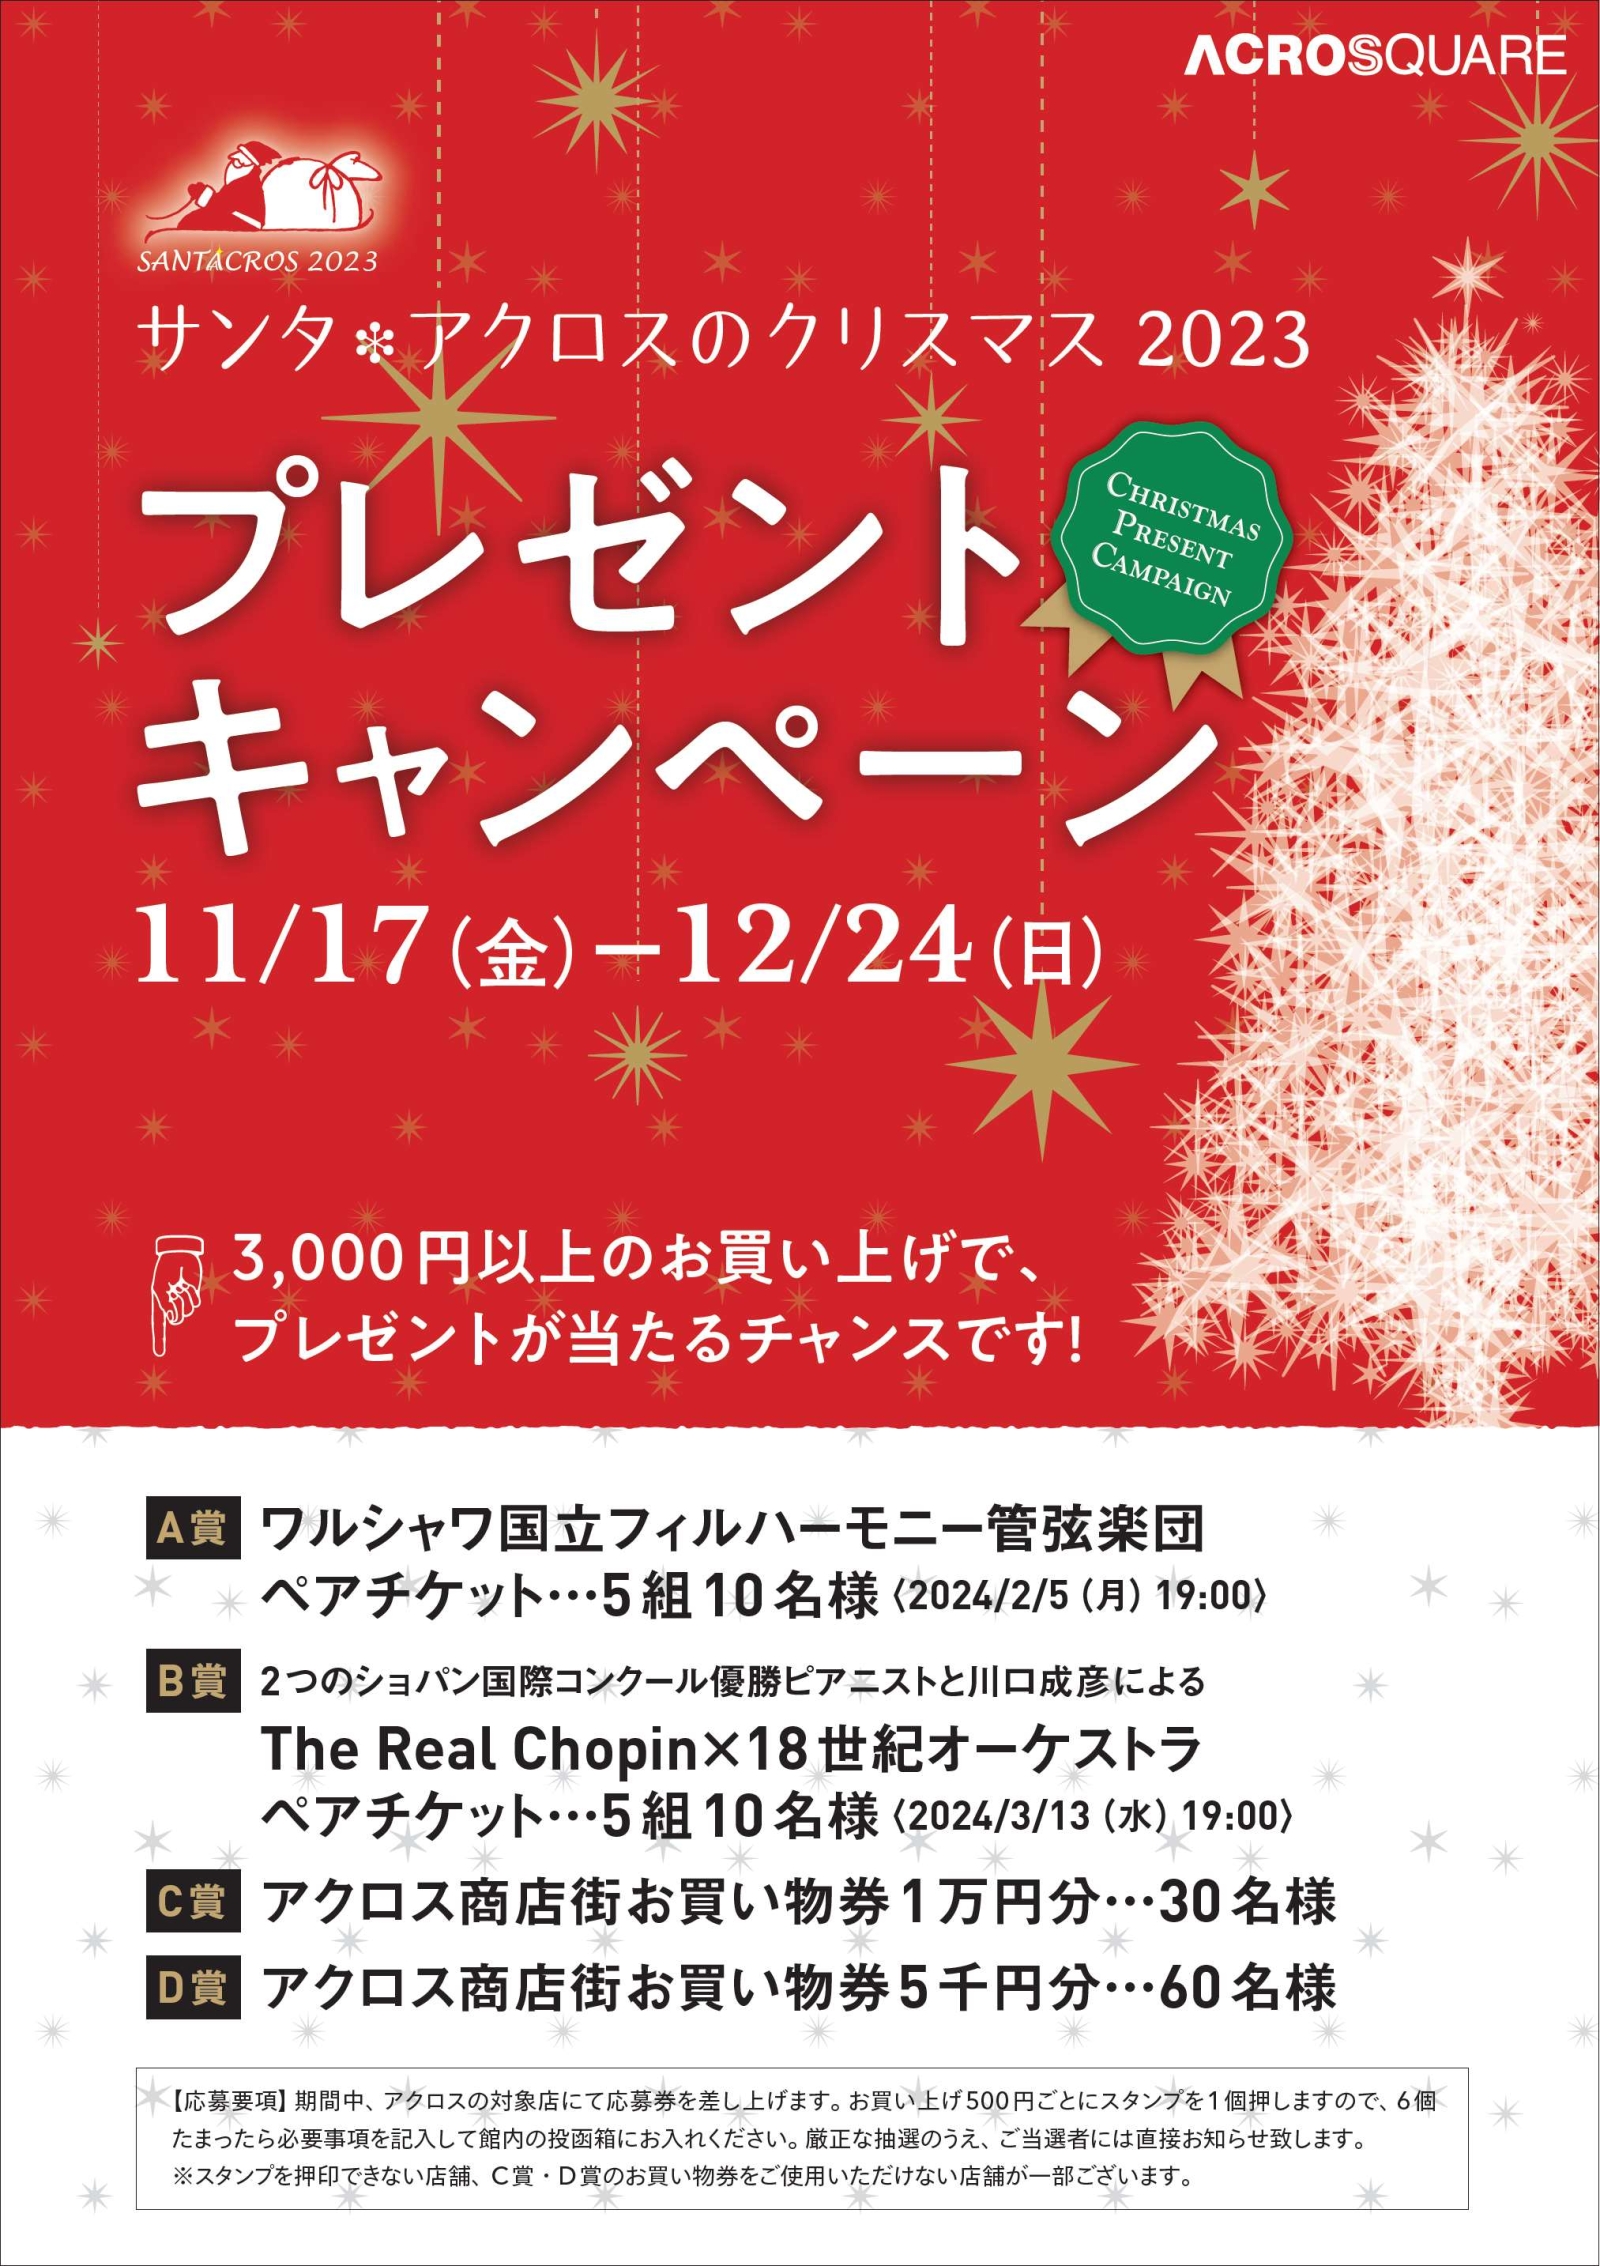 アクロス商店街『サンタ*アクロスのクリスマス2023 プレゼントキャンペーン』スタート!(11/17～12/24)